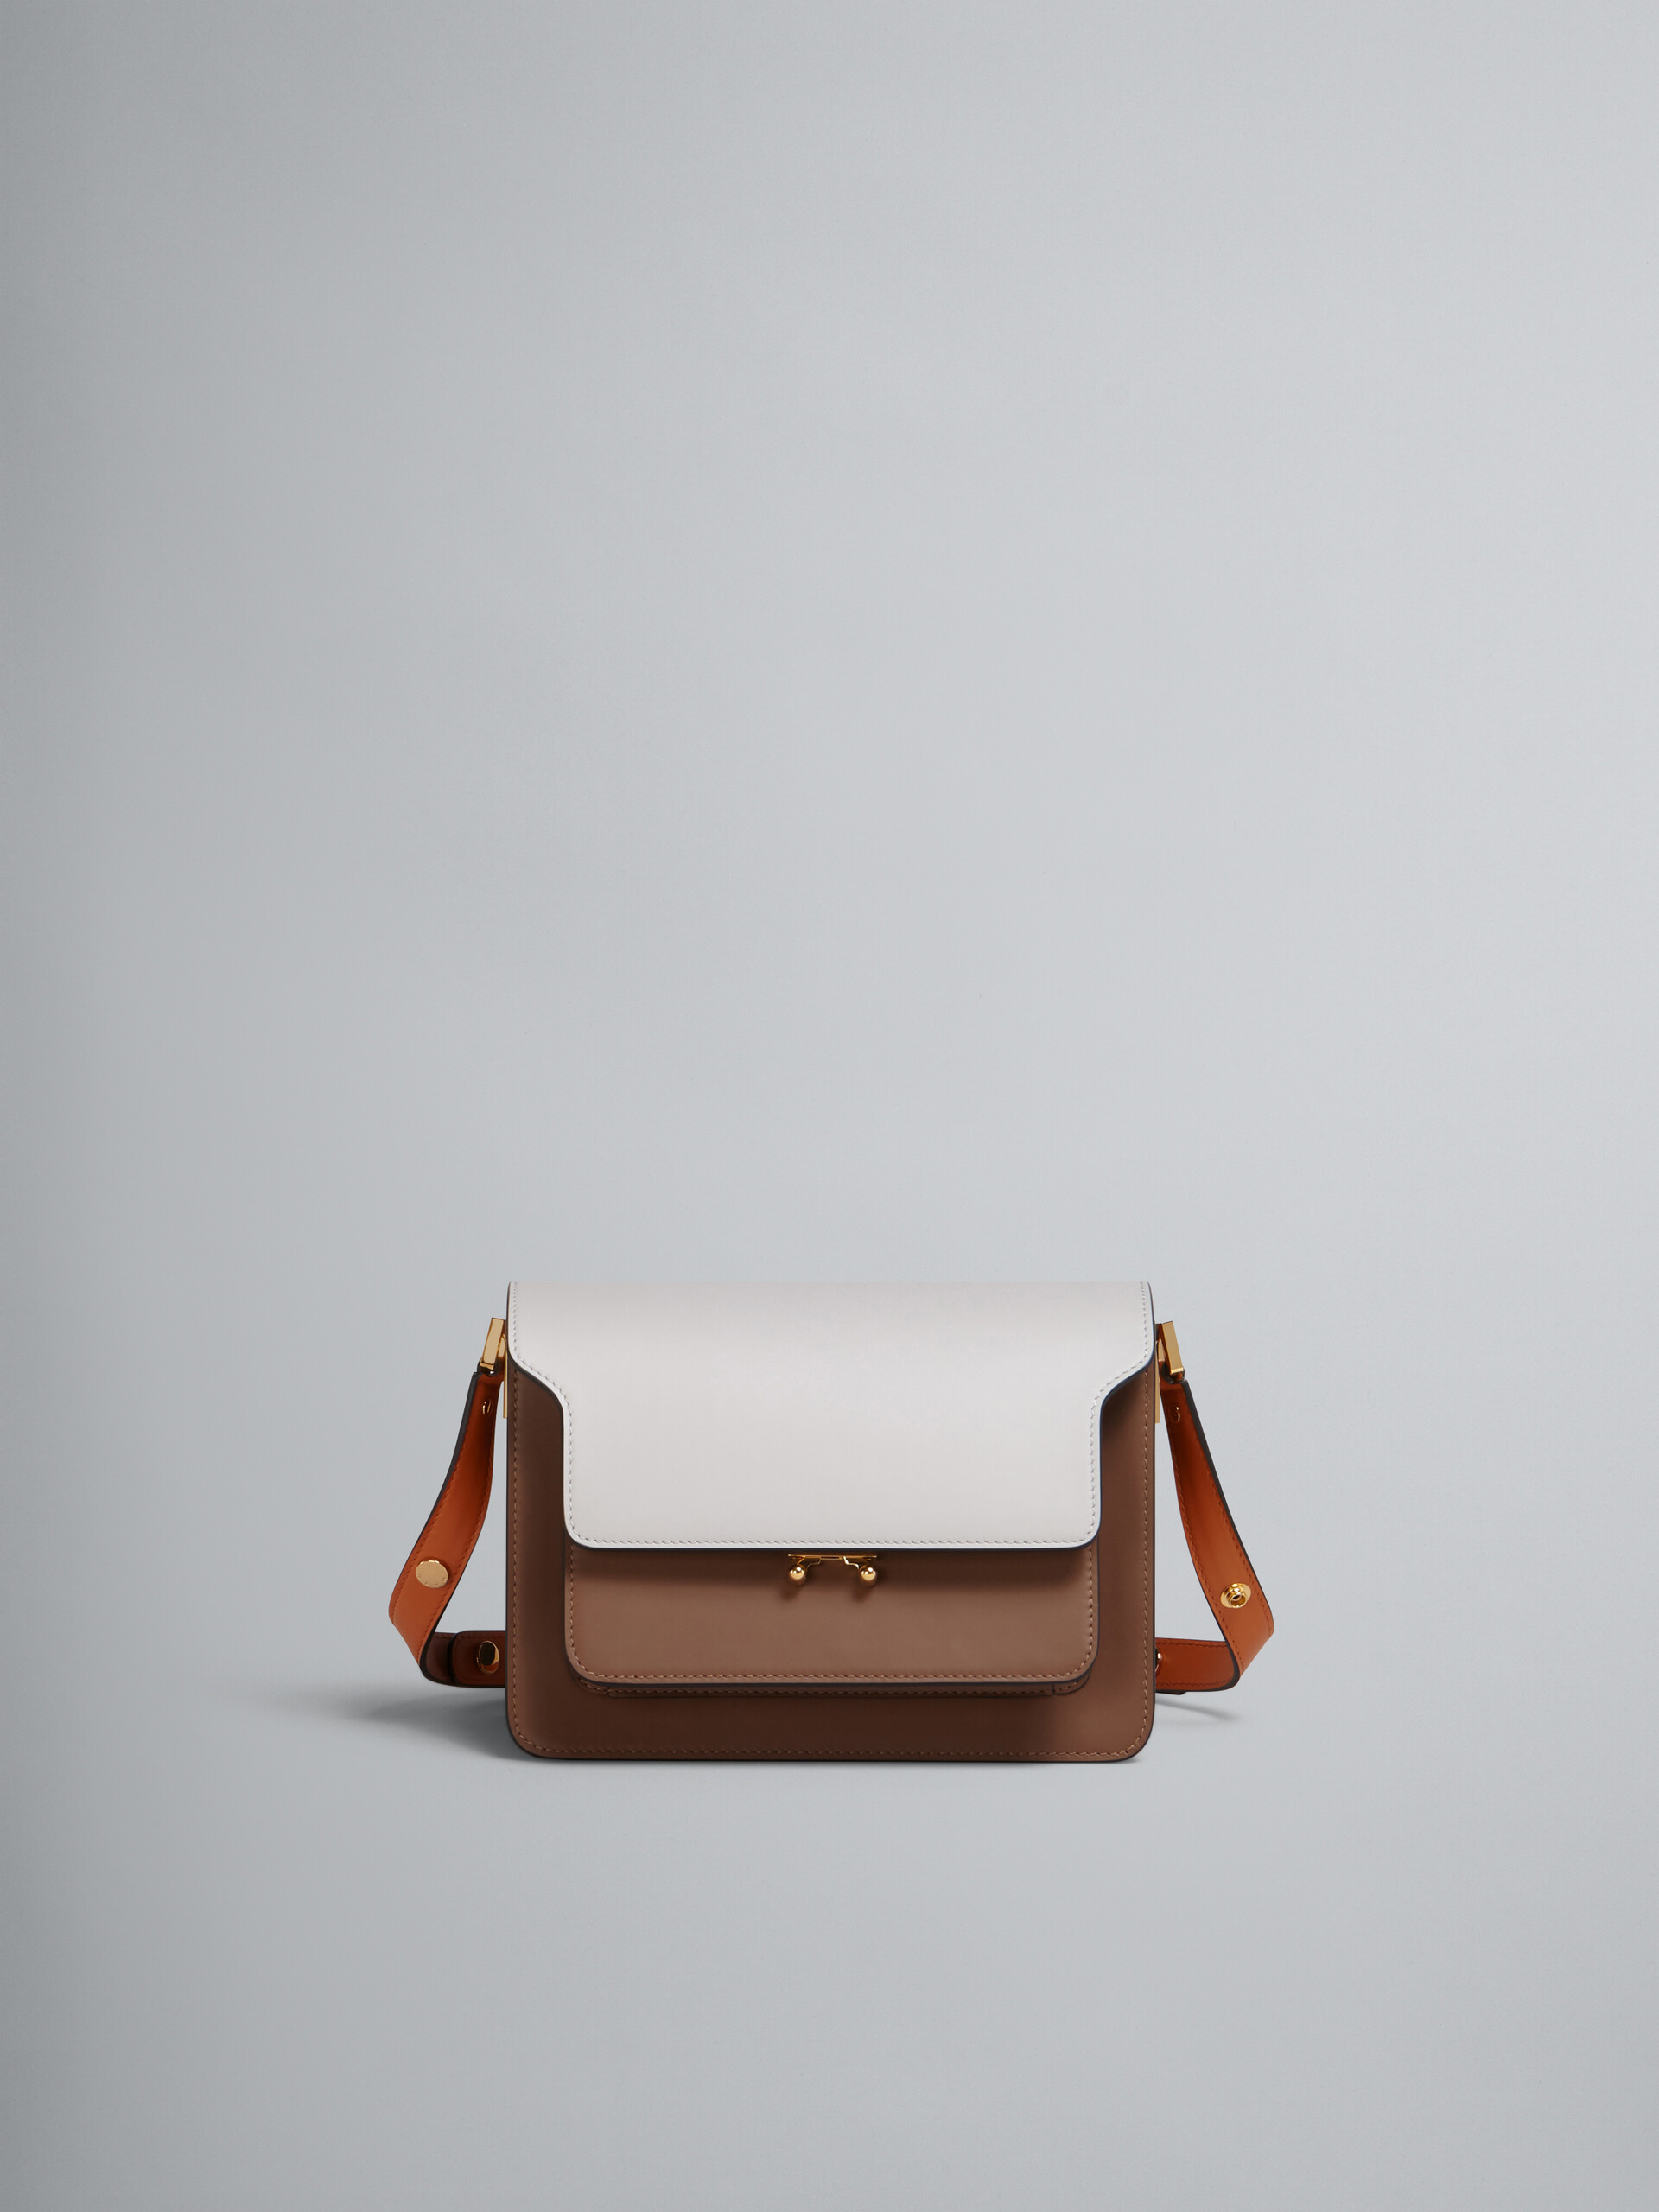 TRUNK medium bag in grey brown and orange leather - Shoulder Bag - Image 1